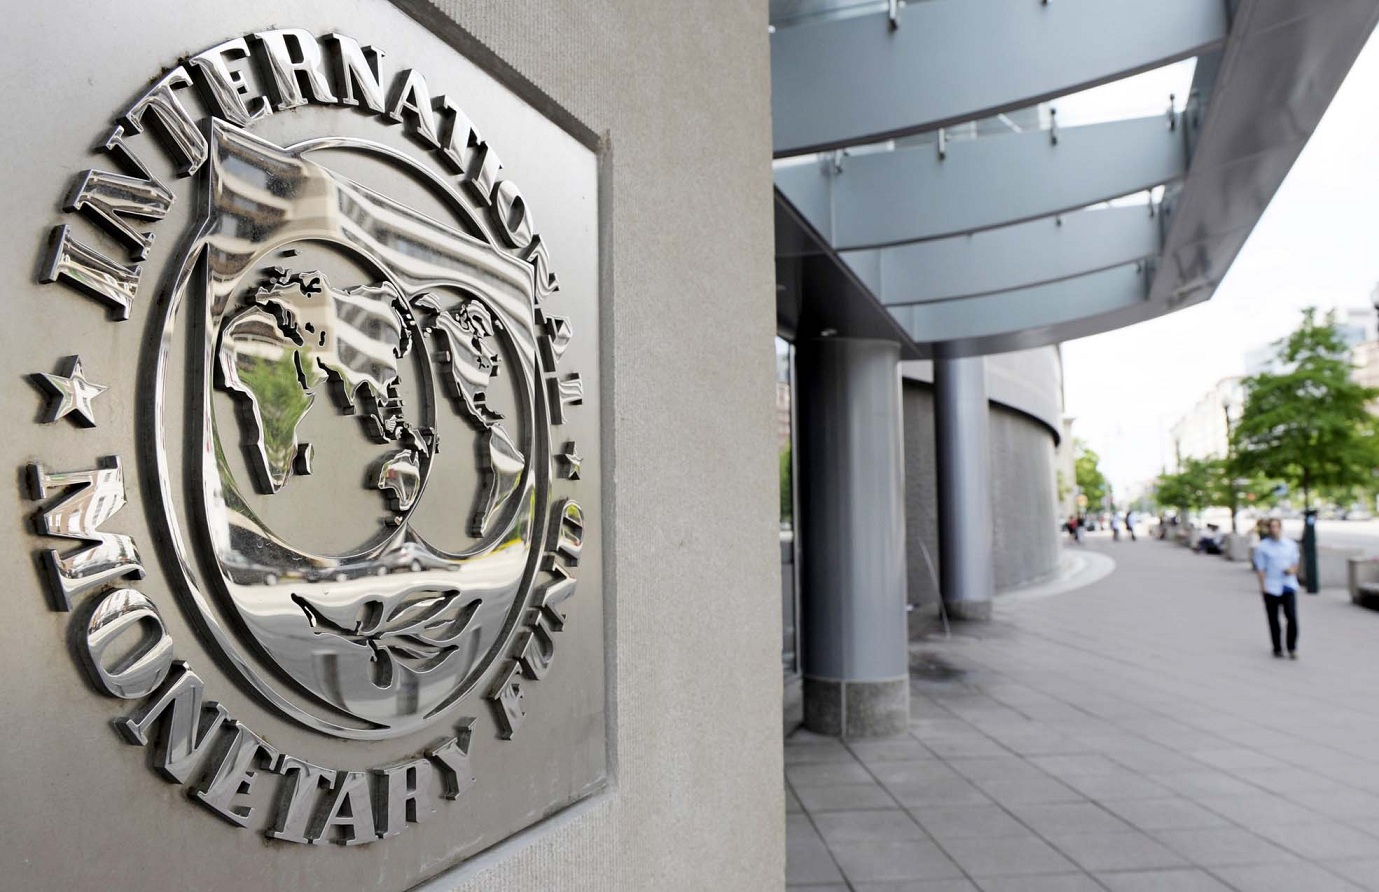 В МВФ надеются на быстрый результат в переговорах с Украиной